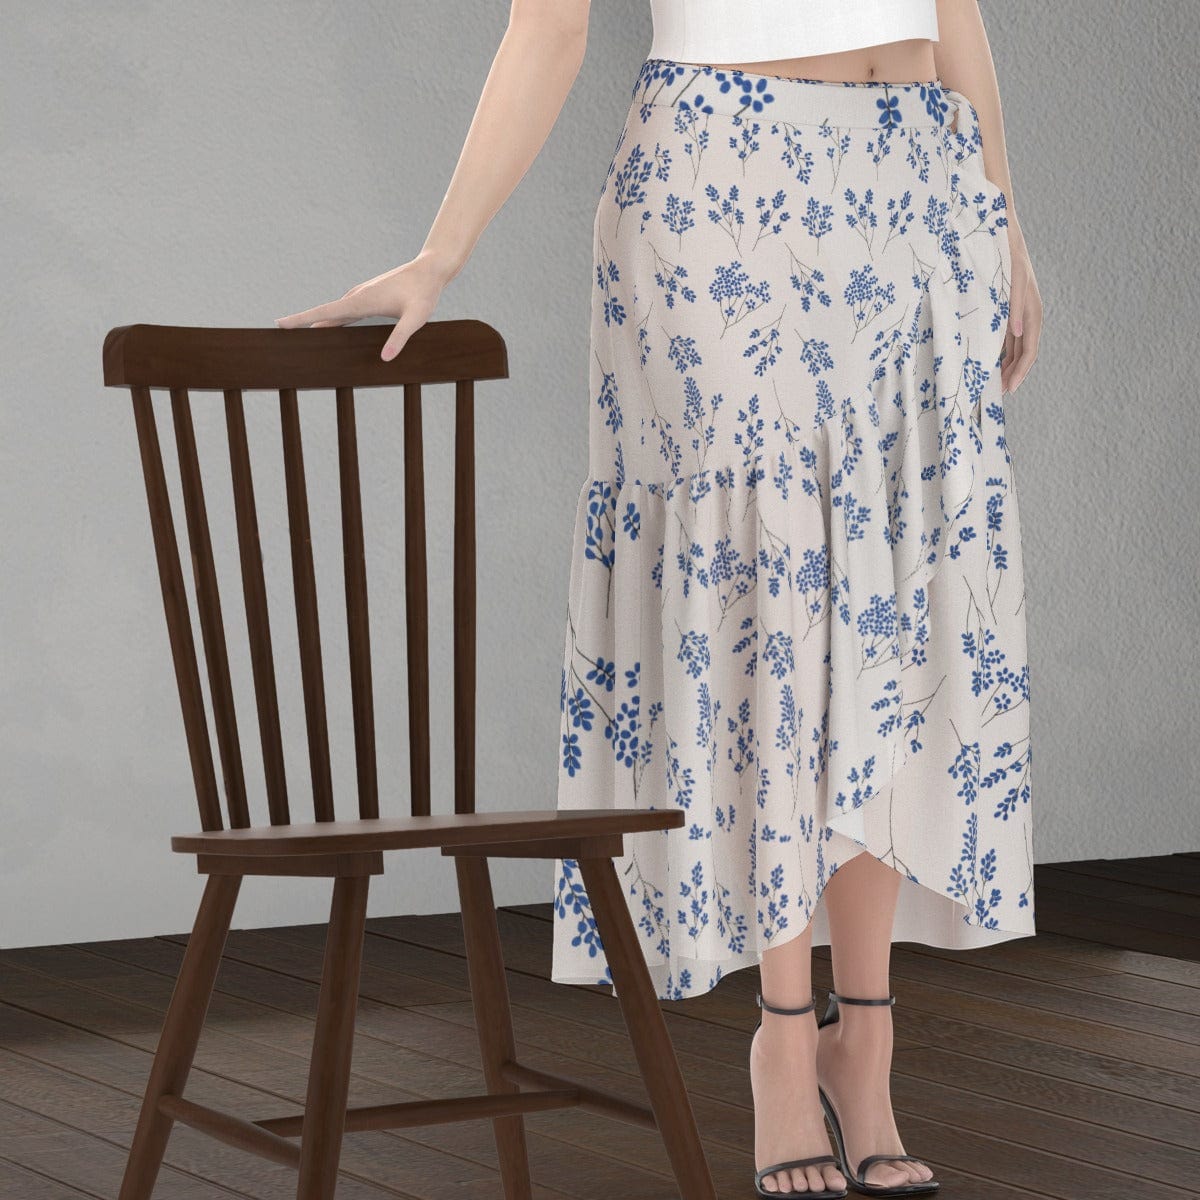 Yoycol Skirt Ecru Blue Floral - Print Women's Wrap Skirt